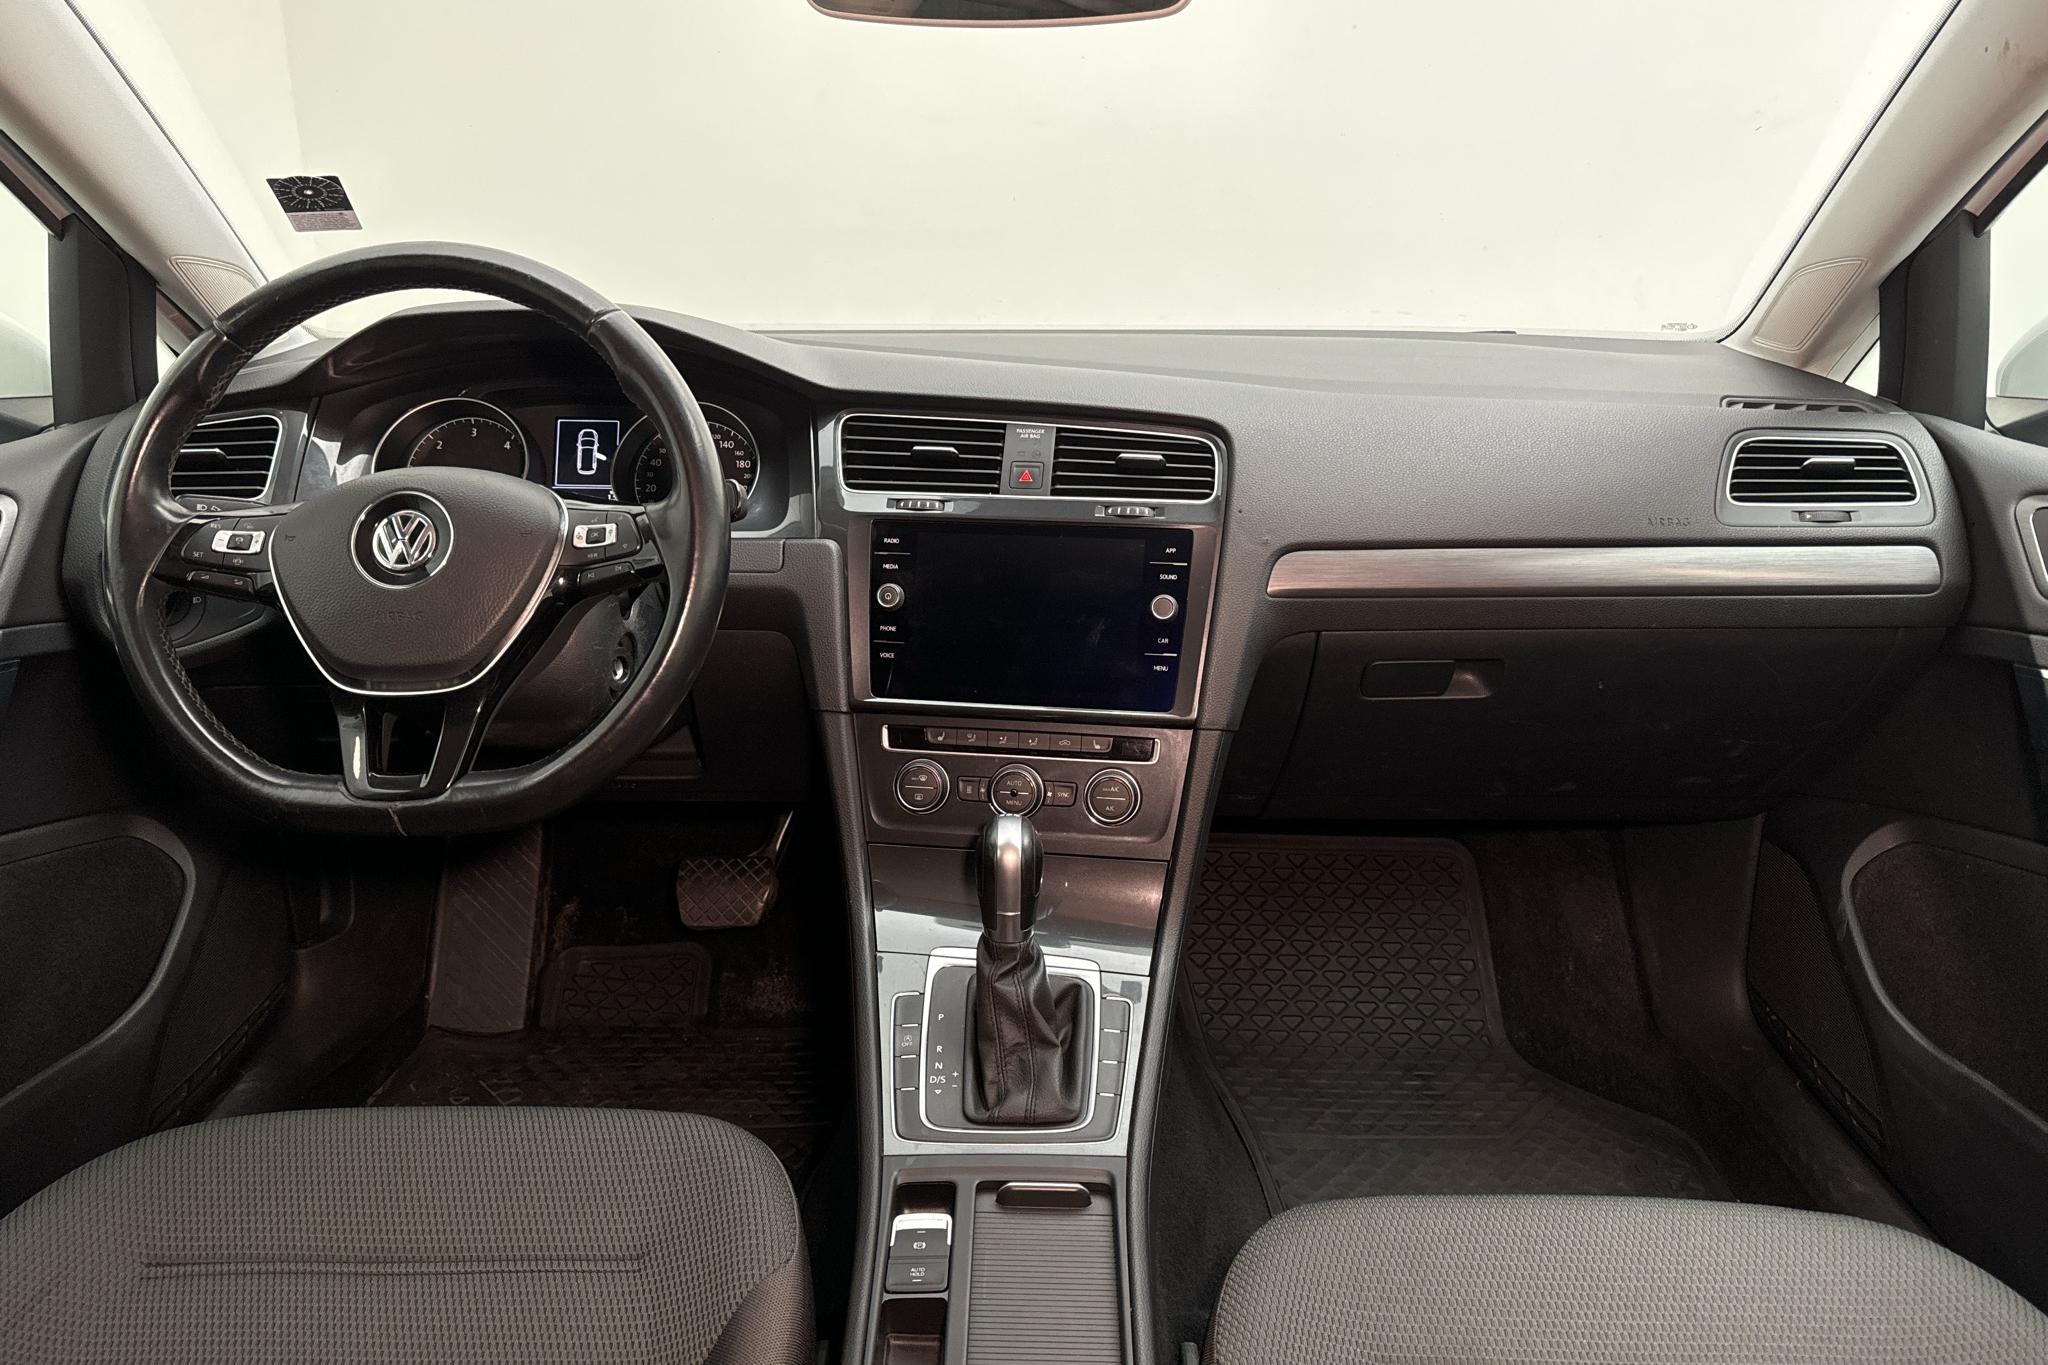 VW Golf VII 1.6 TDI Sportscombi (115hk) - 13 793 mil - Automat - vit - 2019